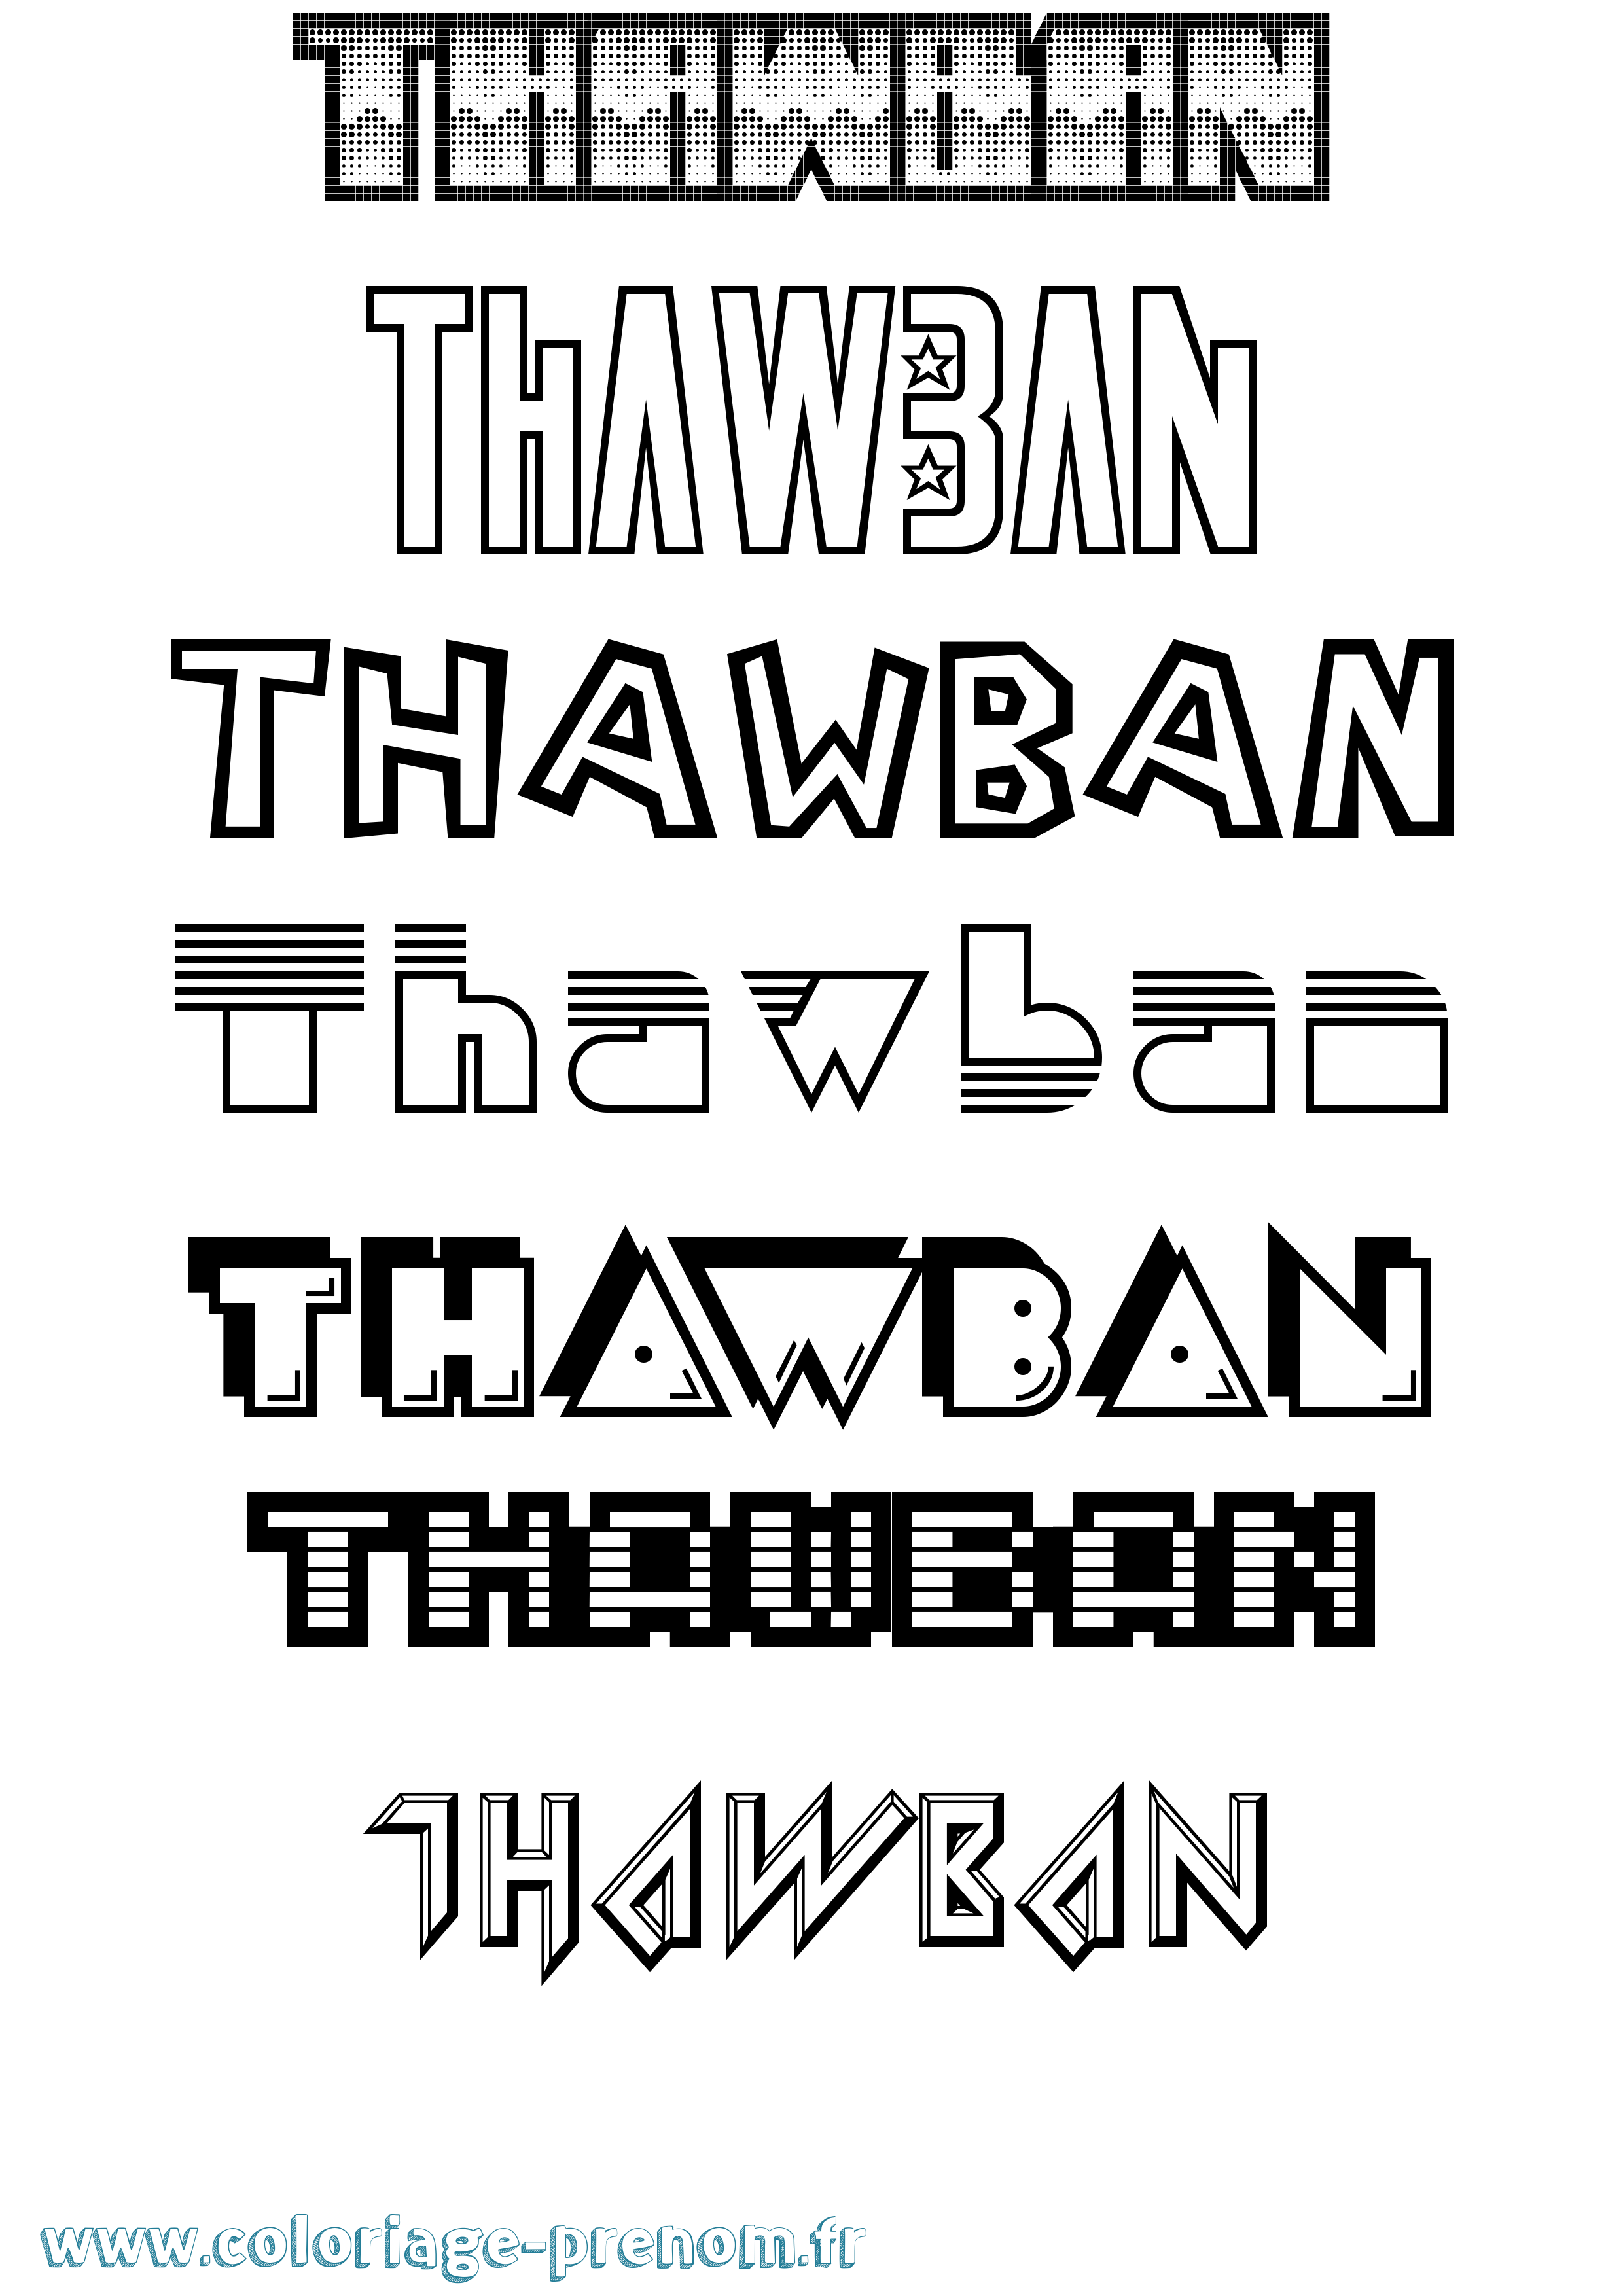 Coloriage prénom Thawban Jeux Vidéos